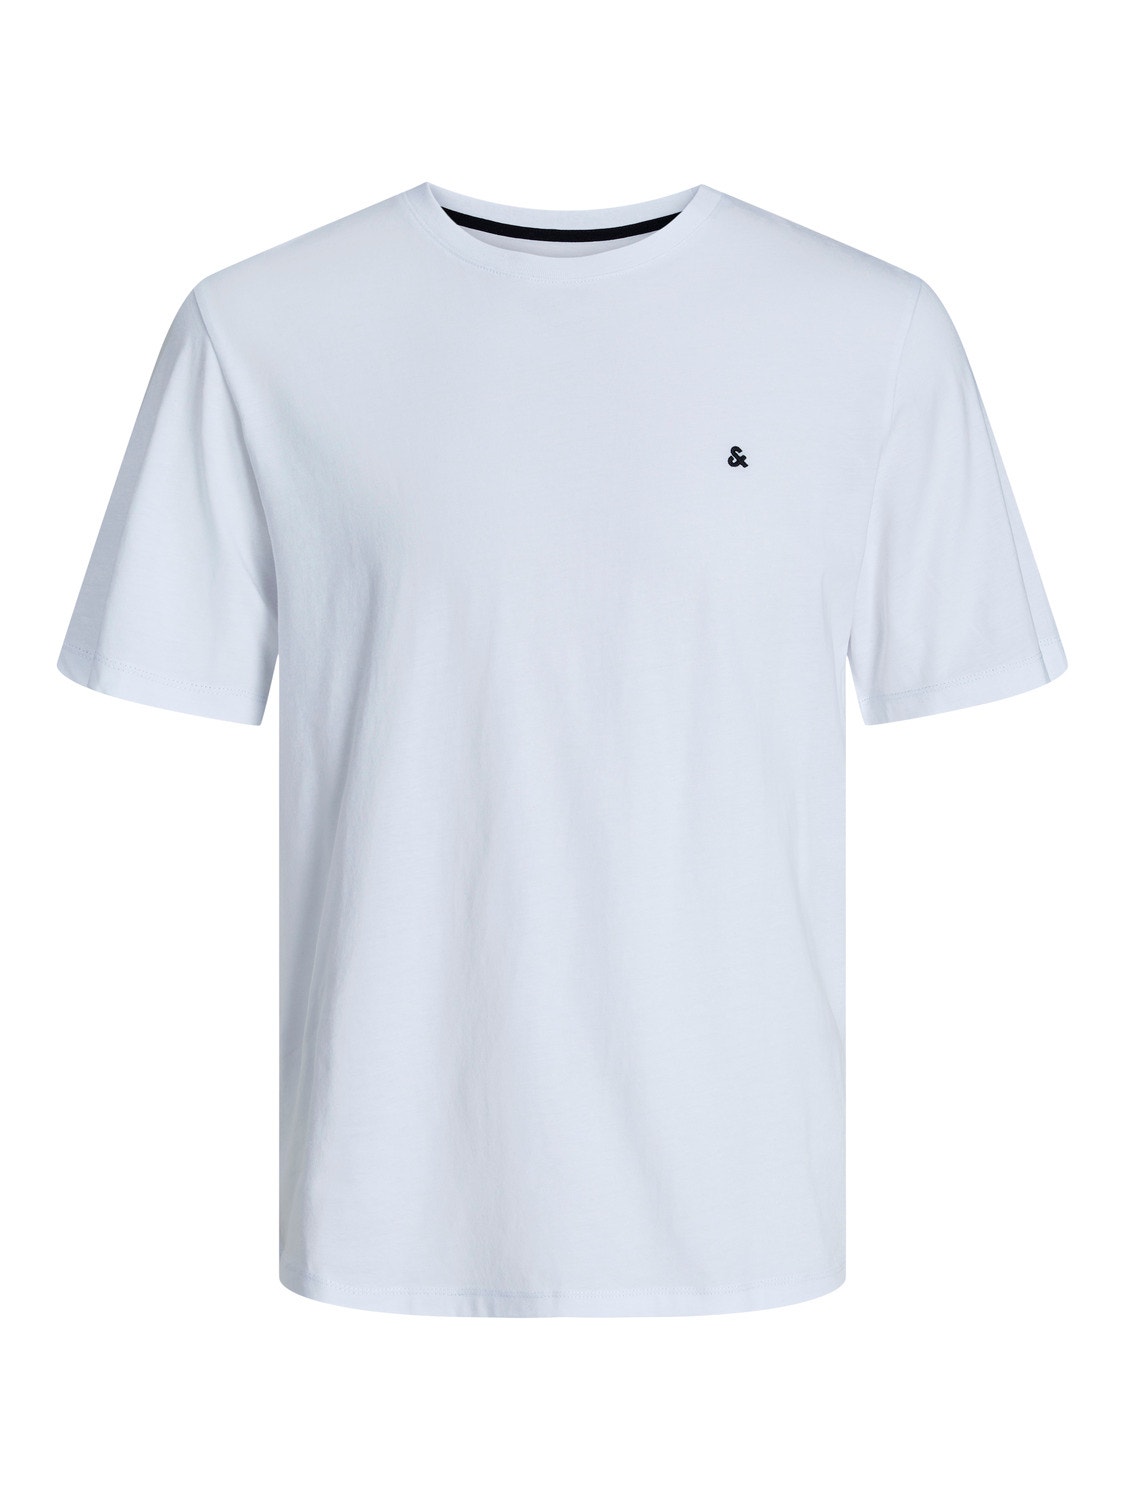 Jack & Jones Plus Size Plain T-shirt -White - 12253778